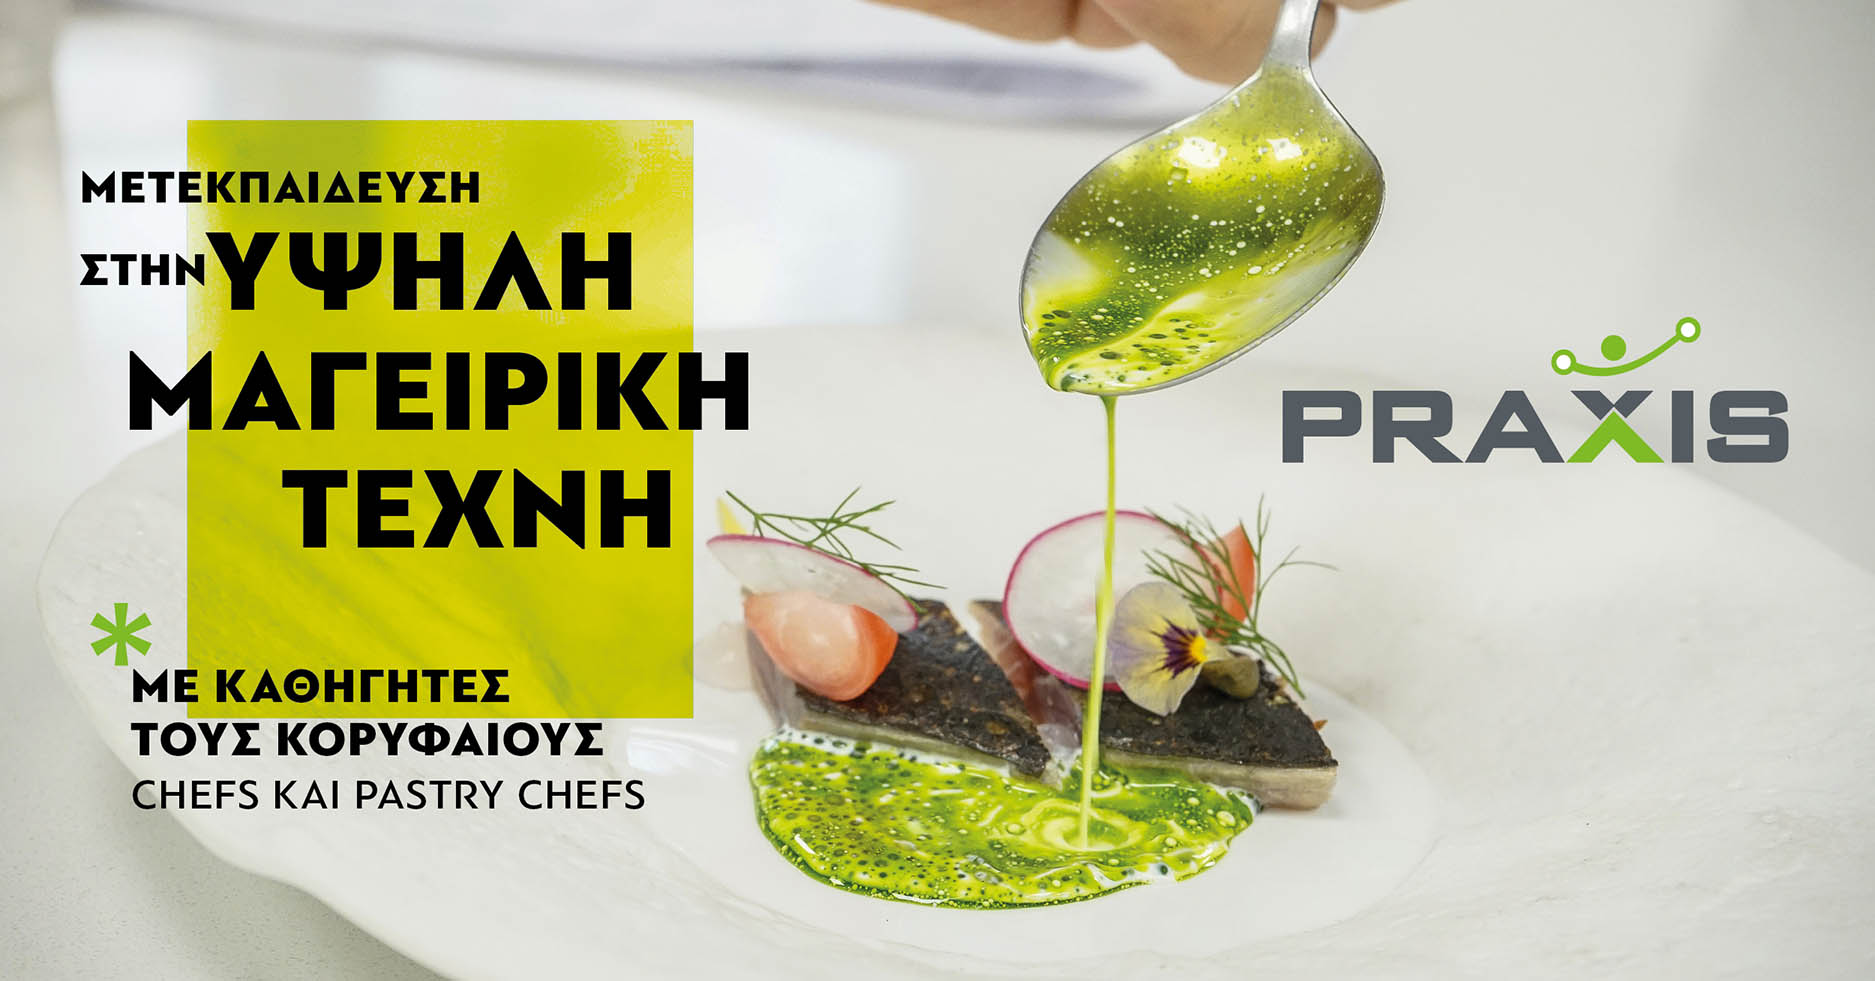 Μετεκπαίδευση στην Υψηλή Μαγειρική Τέχνη PRAXIS Gastronomy PostGraduate Course